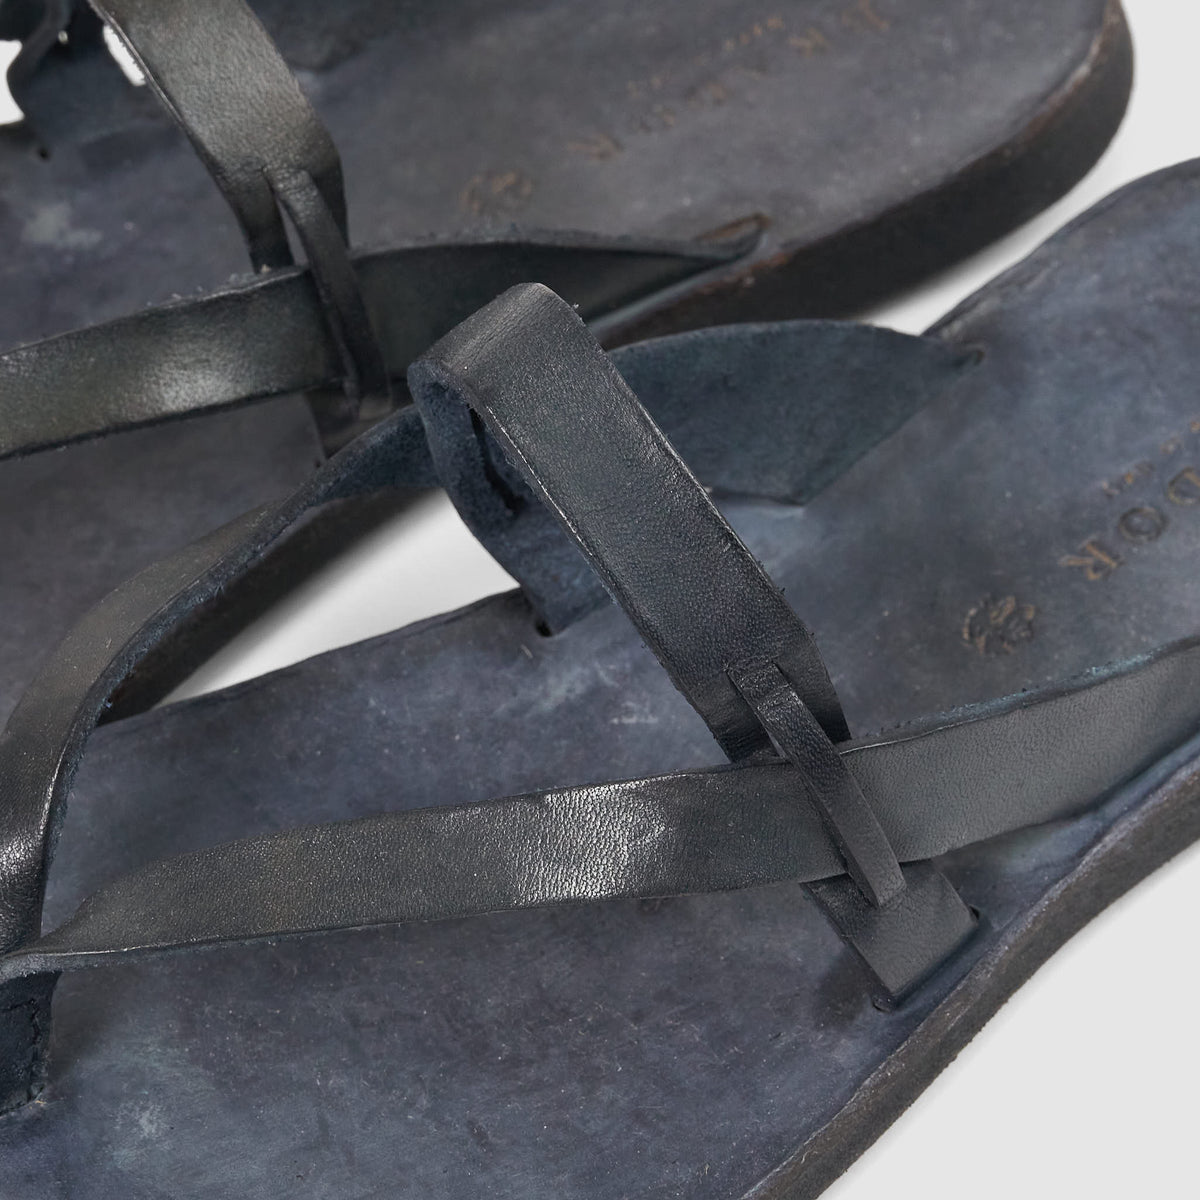 Brador Ladies Flip Flop Leather Sandals